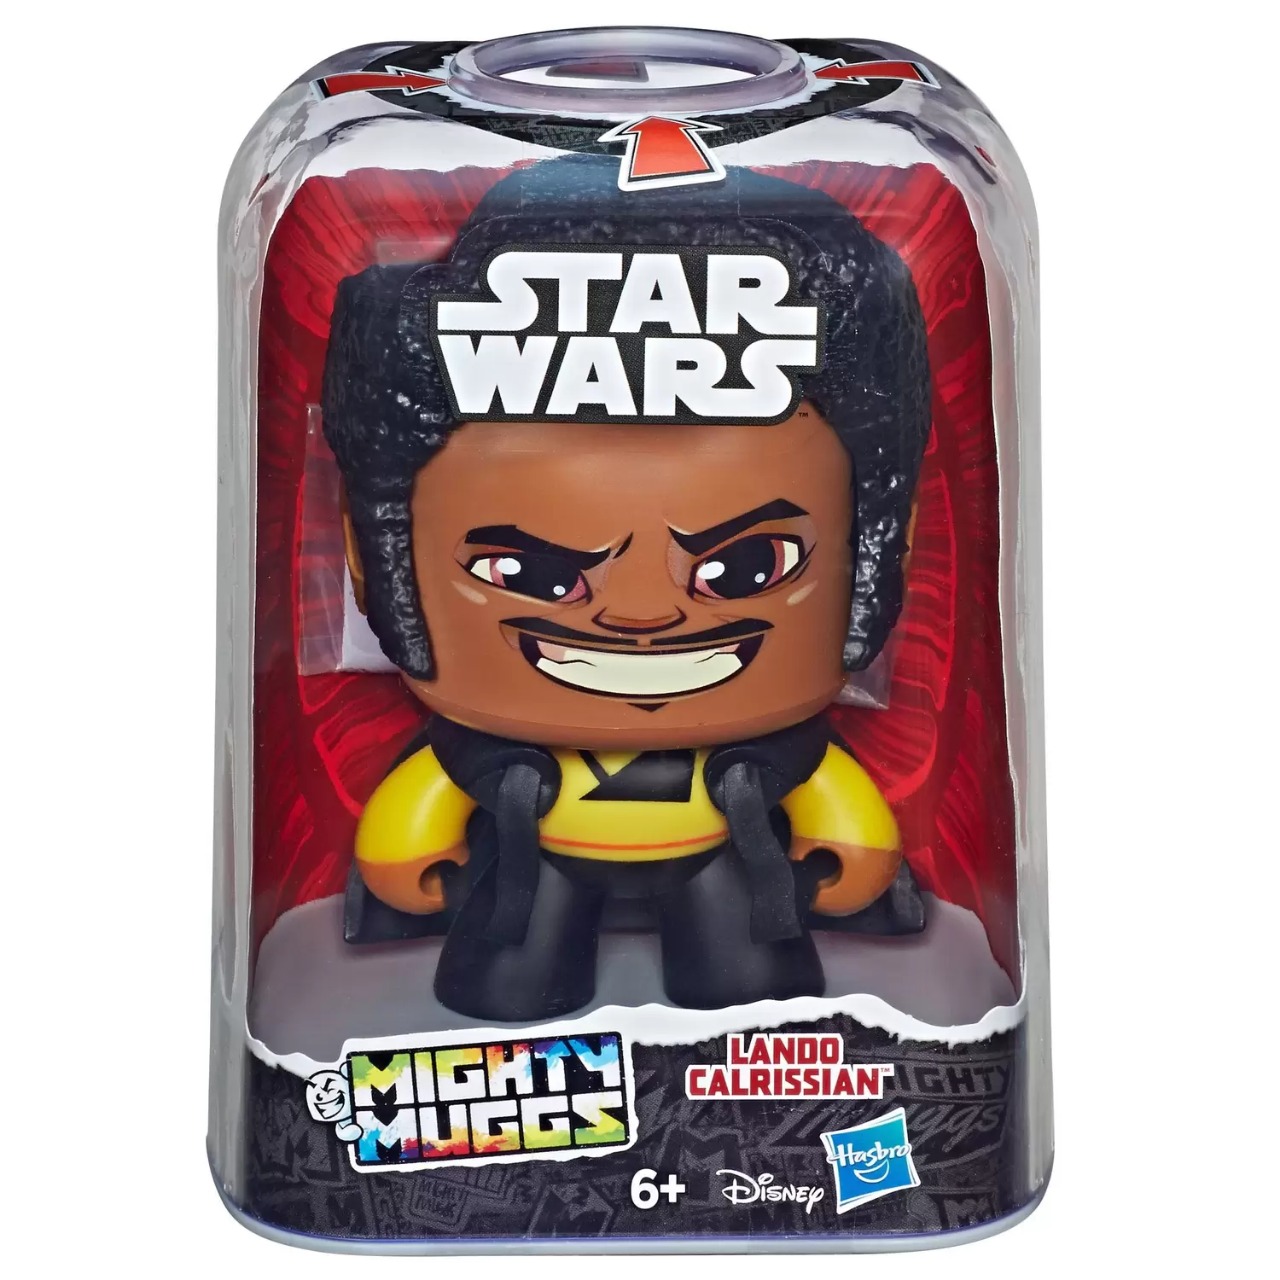 Boneco Colecionável Mighty Muggs Star Wars Lando Carlrissian Hasbro